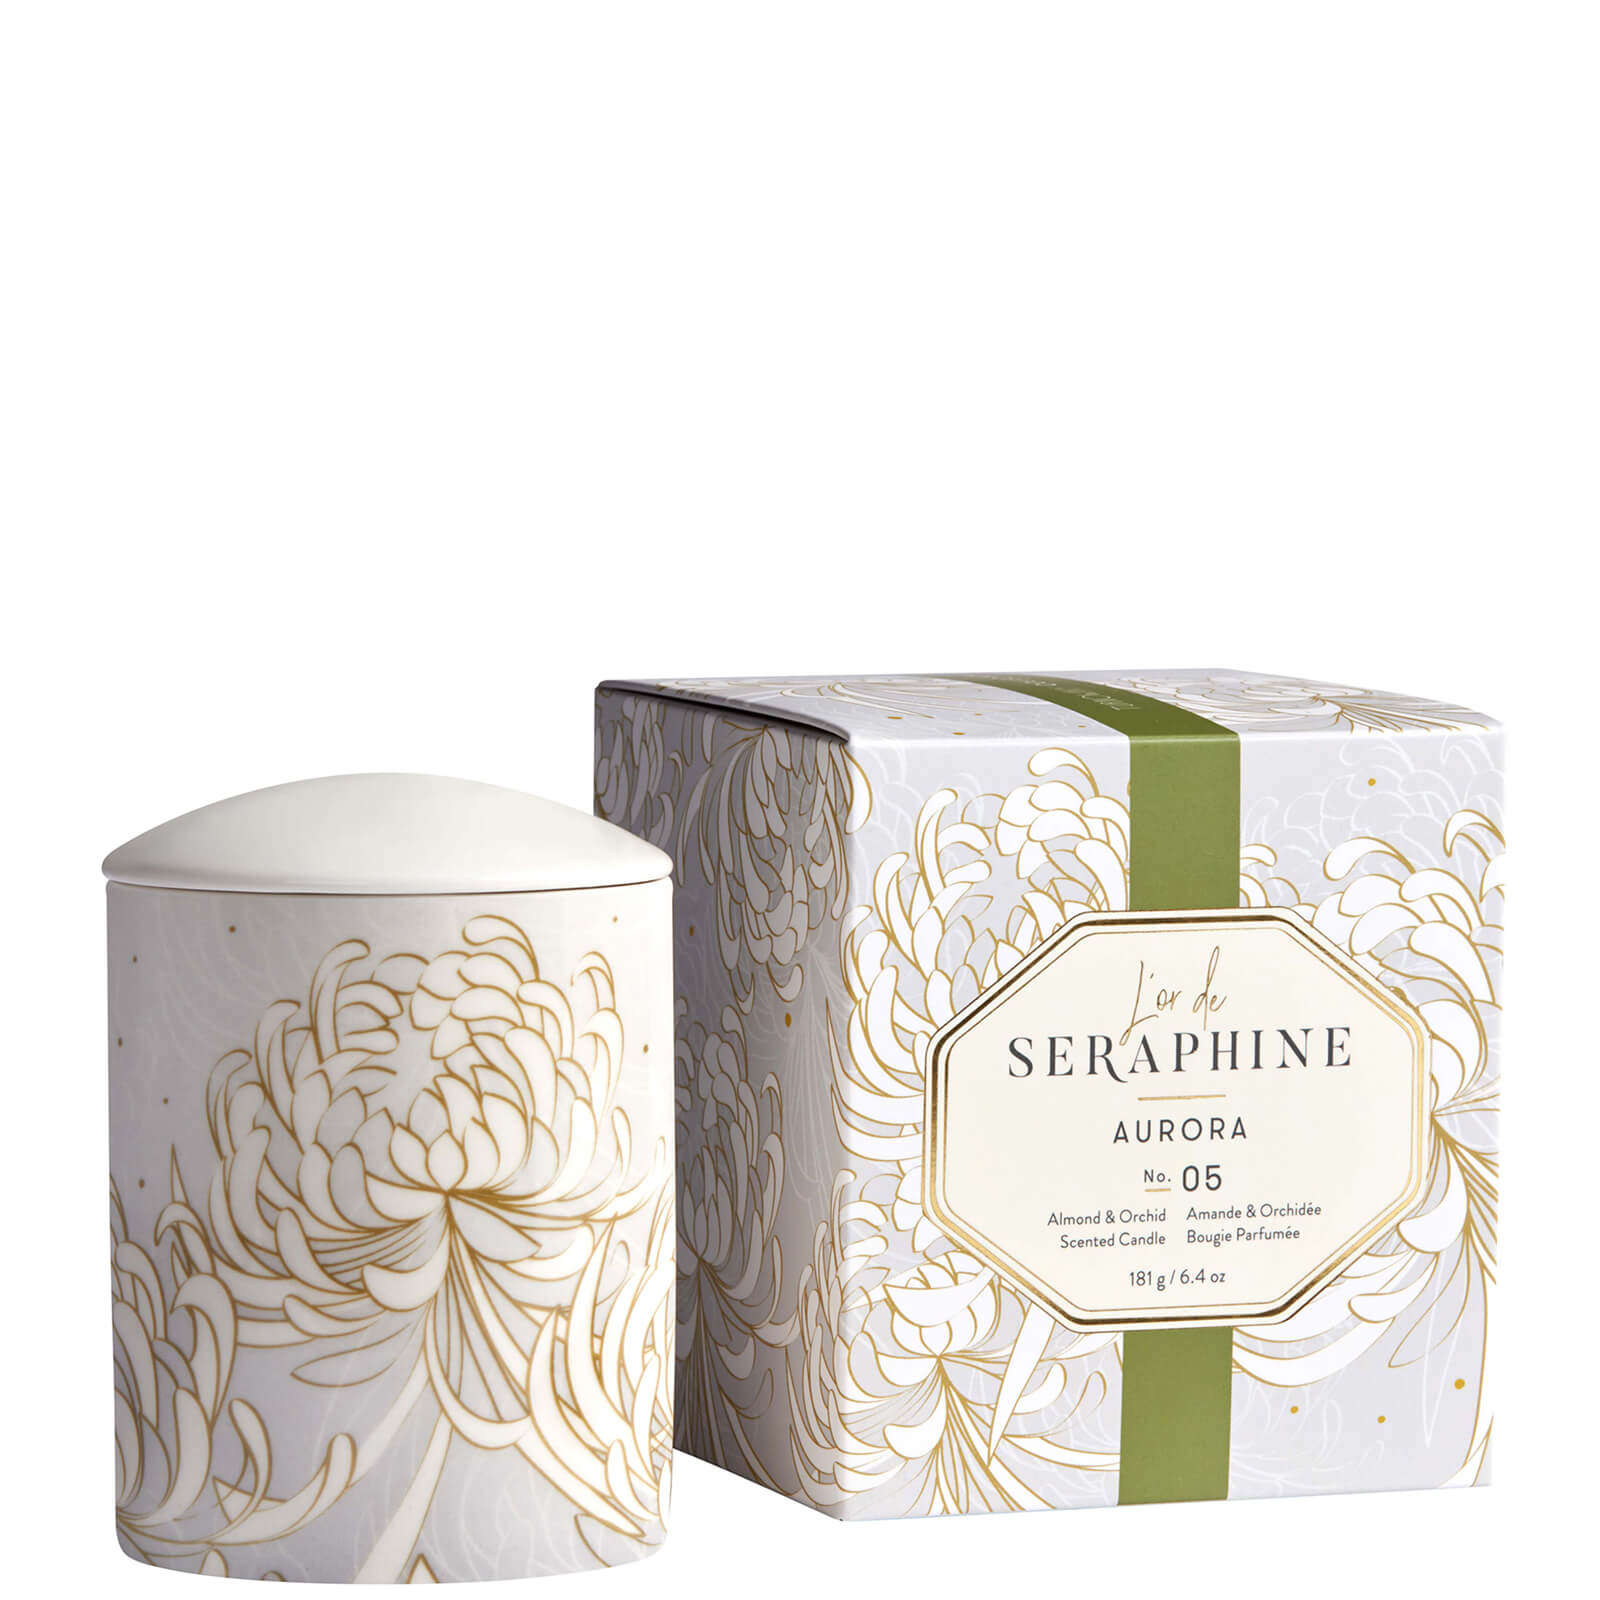 L'or De Seraphine Aurora Medium Ceramic Candle 6.4 oz In White